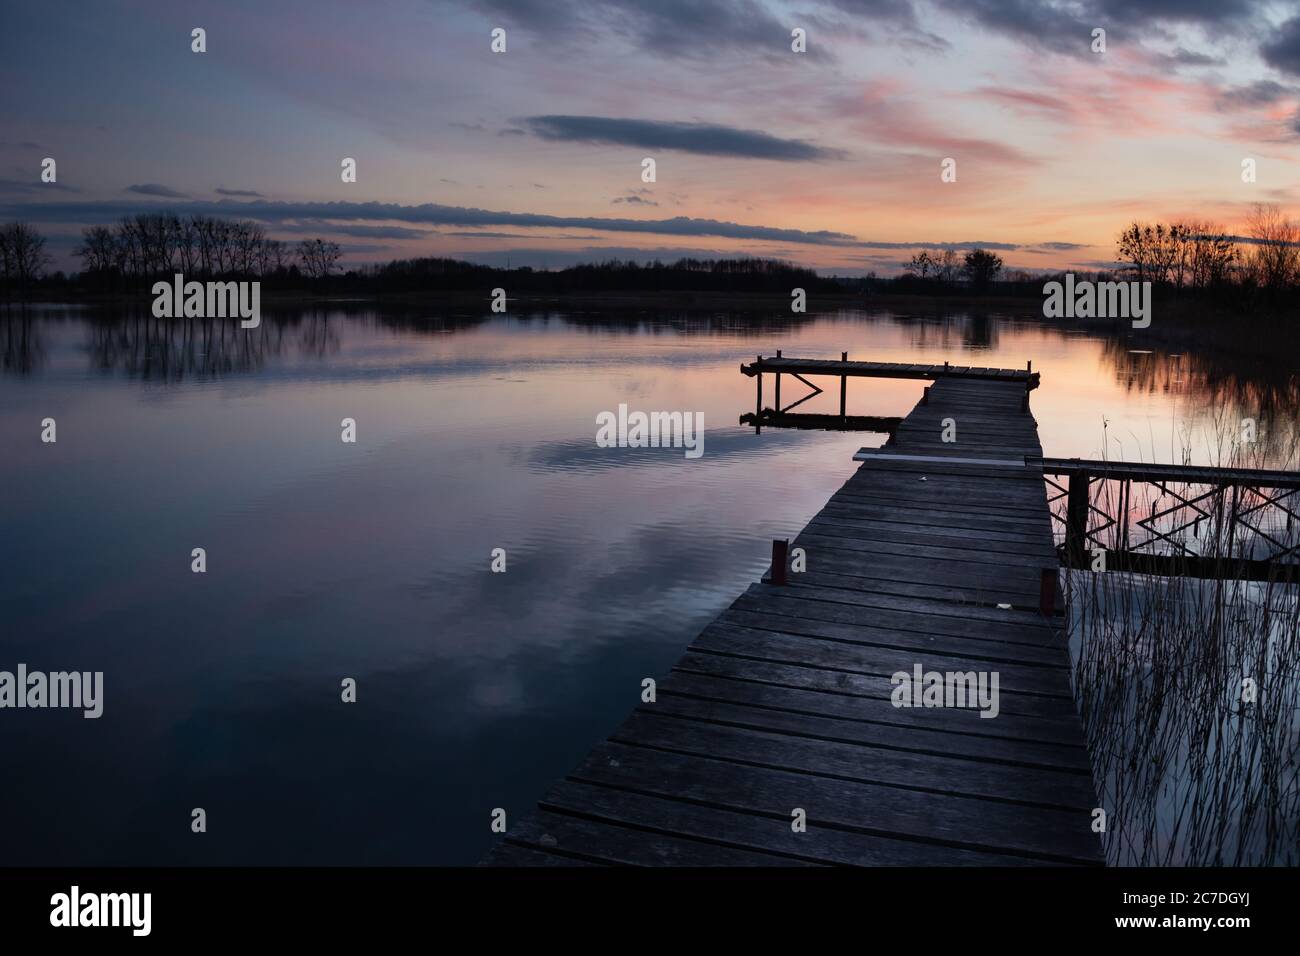 Hölzerner Steg an einem ruhigen See, abends farbige Wolken bei Sonnenuntergang Stockfoto